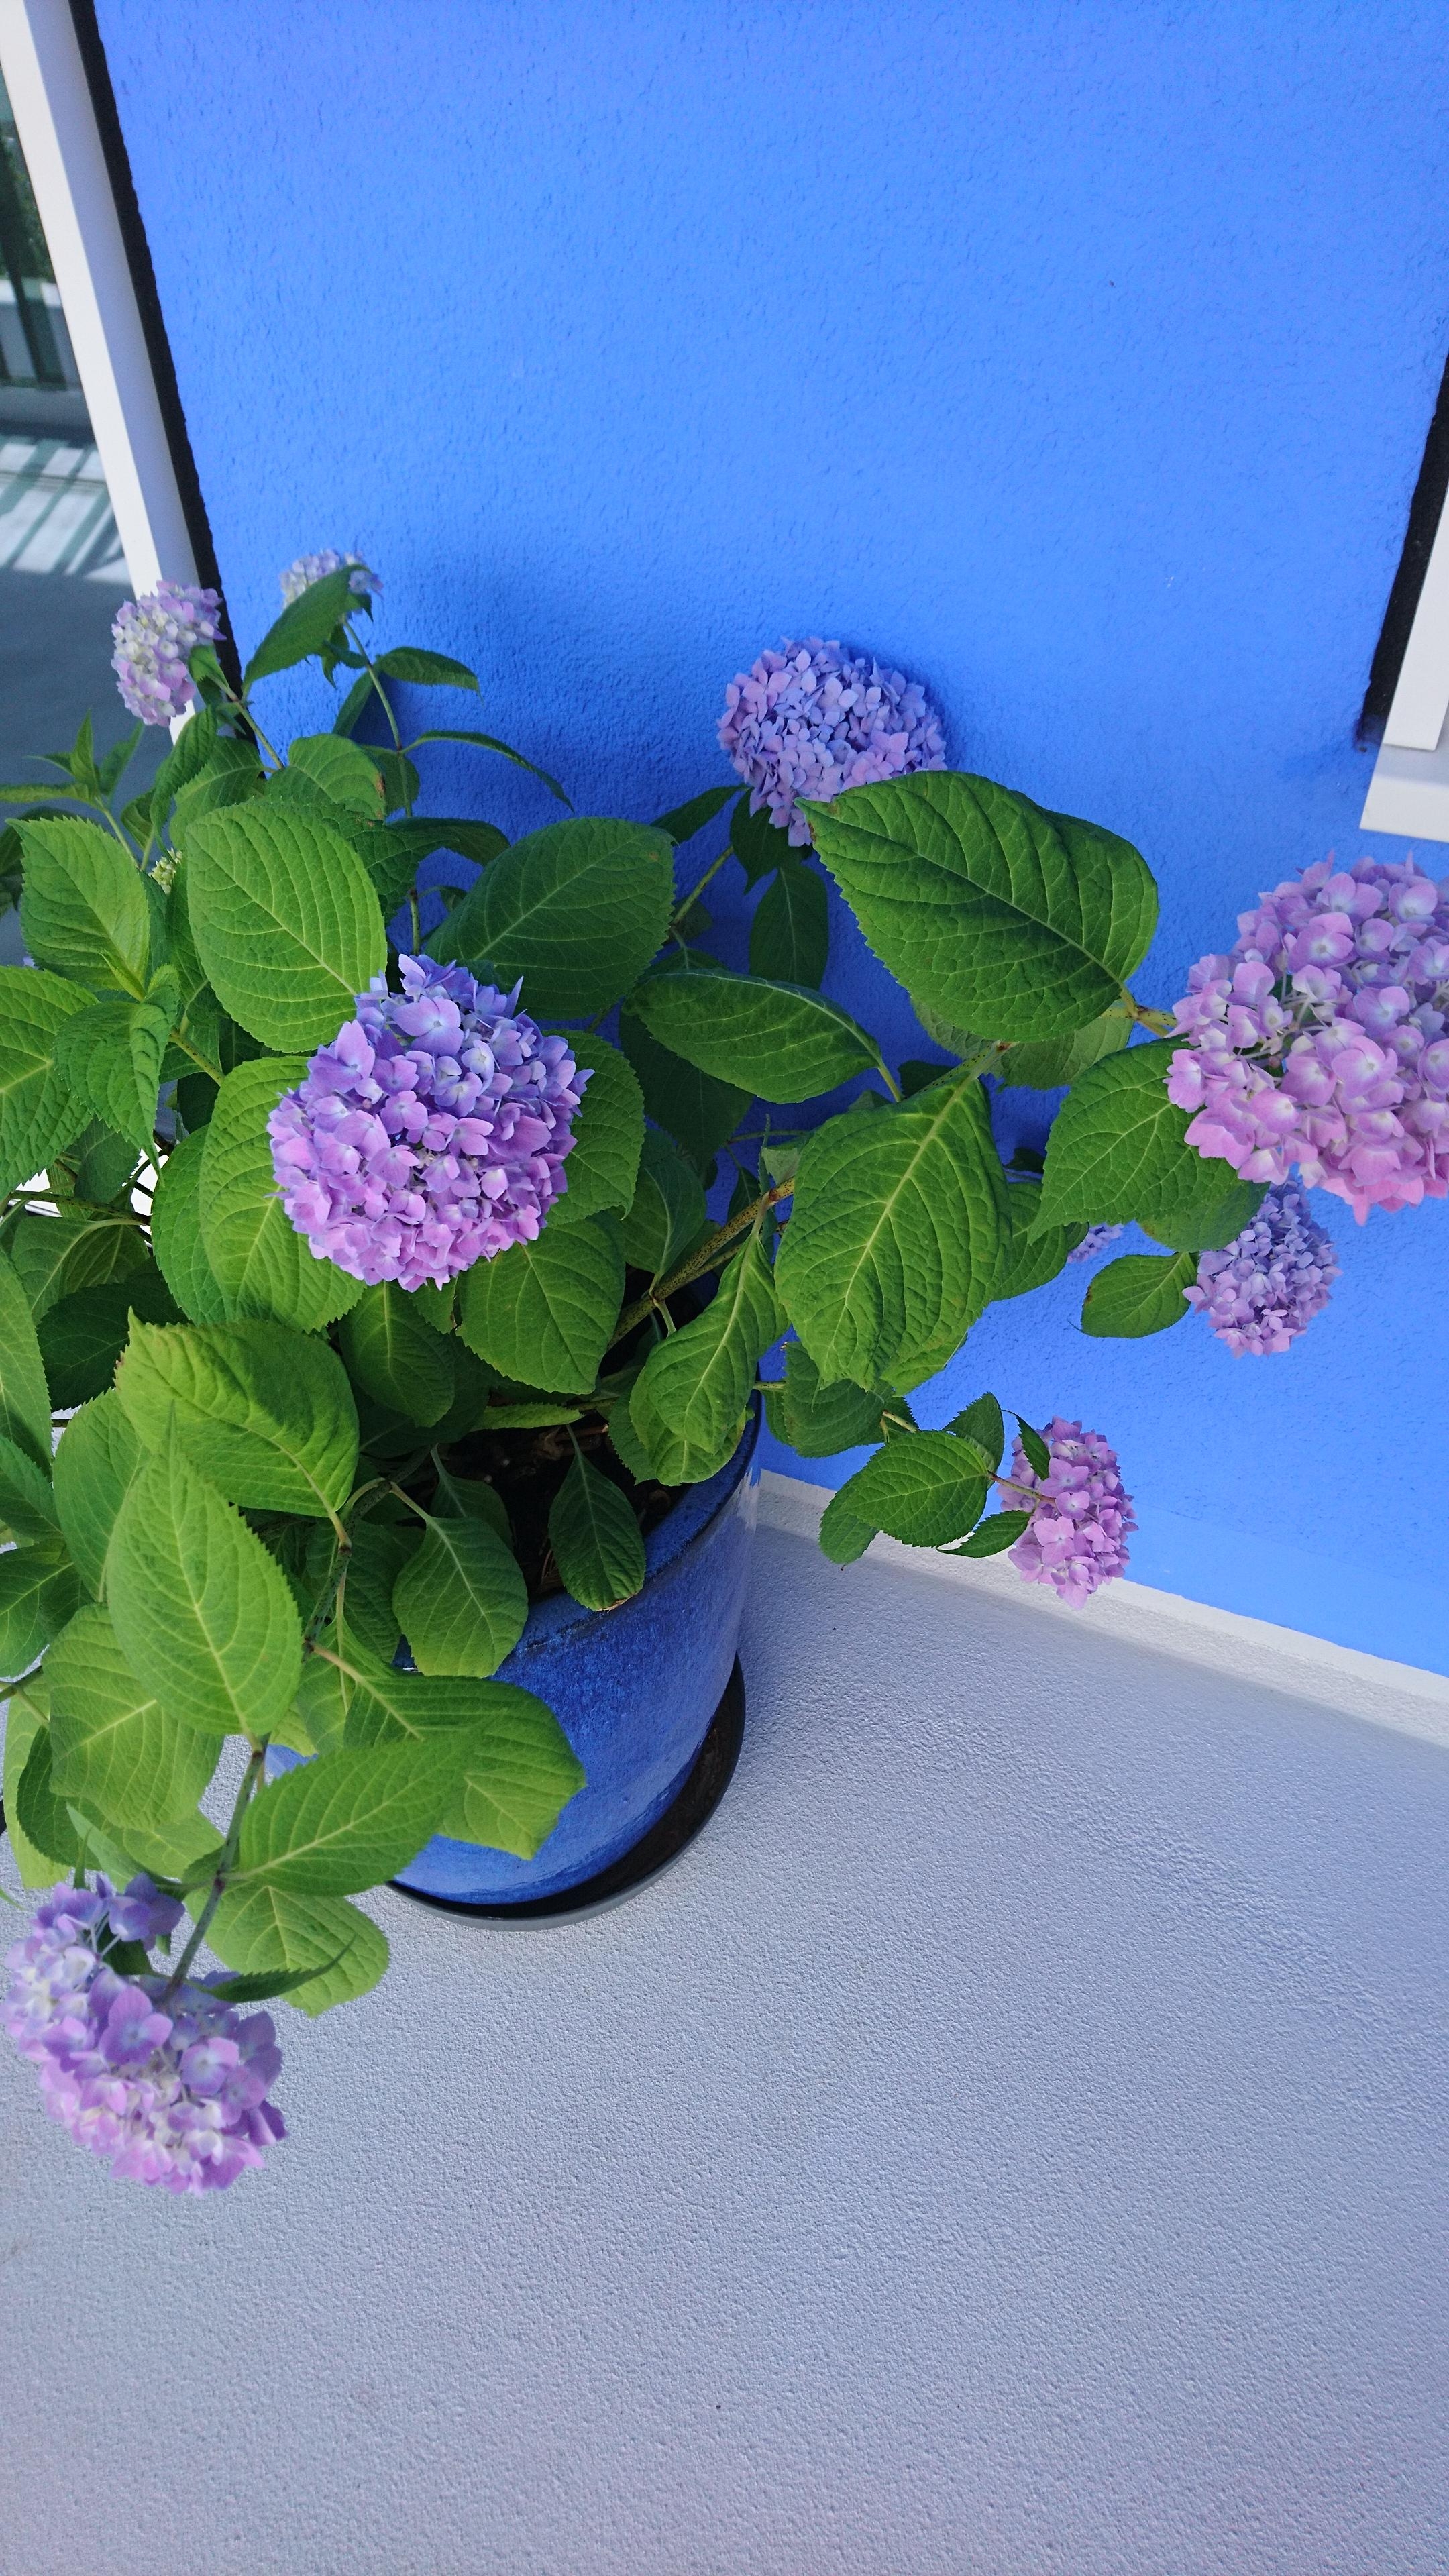 #Blau steht für Frische, Schönheit und man verbindet es mit Ruhe & Sehnsucht... 🐳 🌎

#sommerblumen #Hortensien